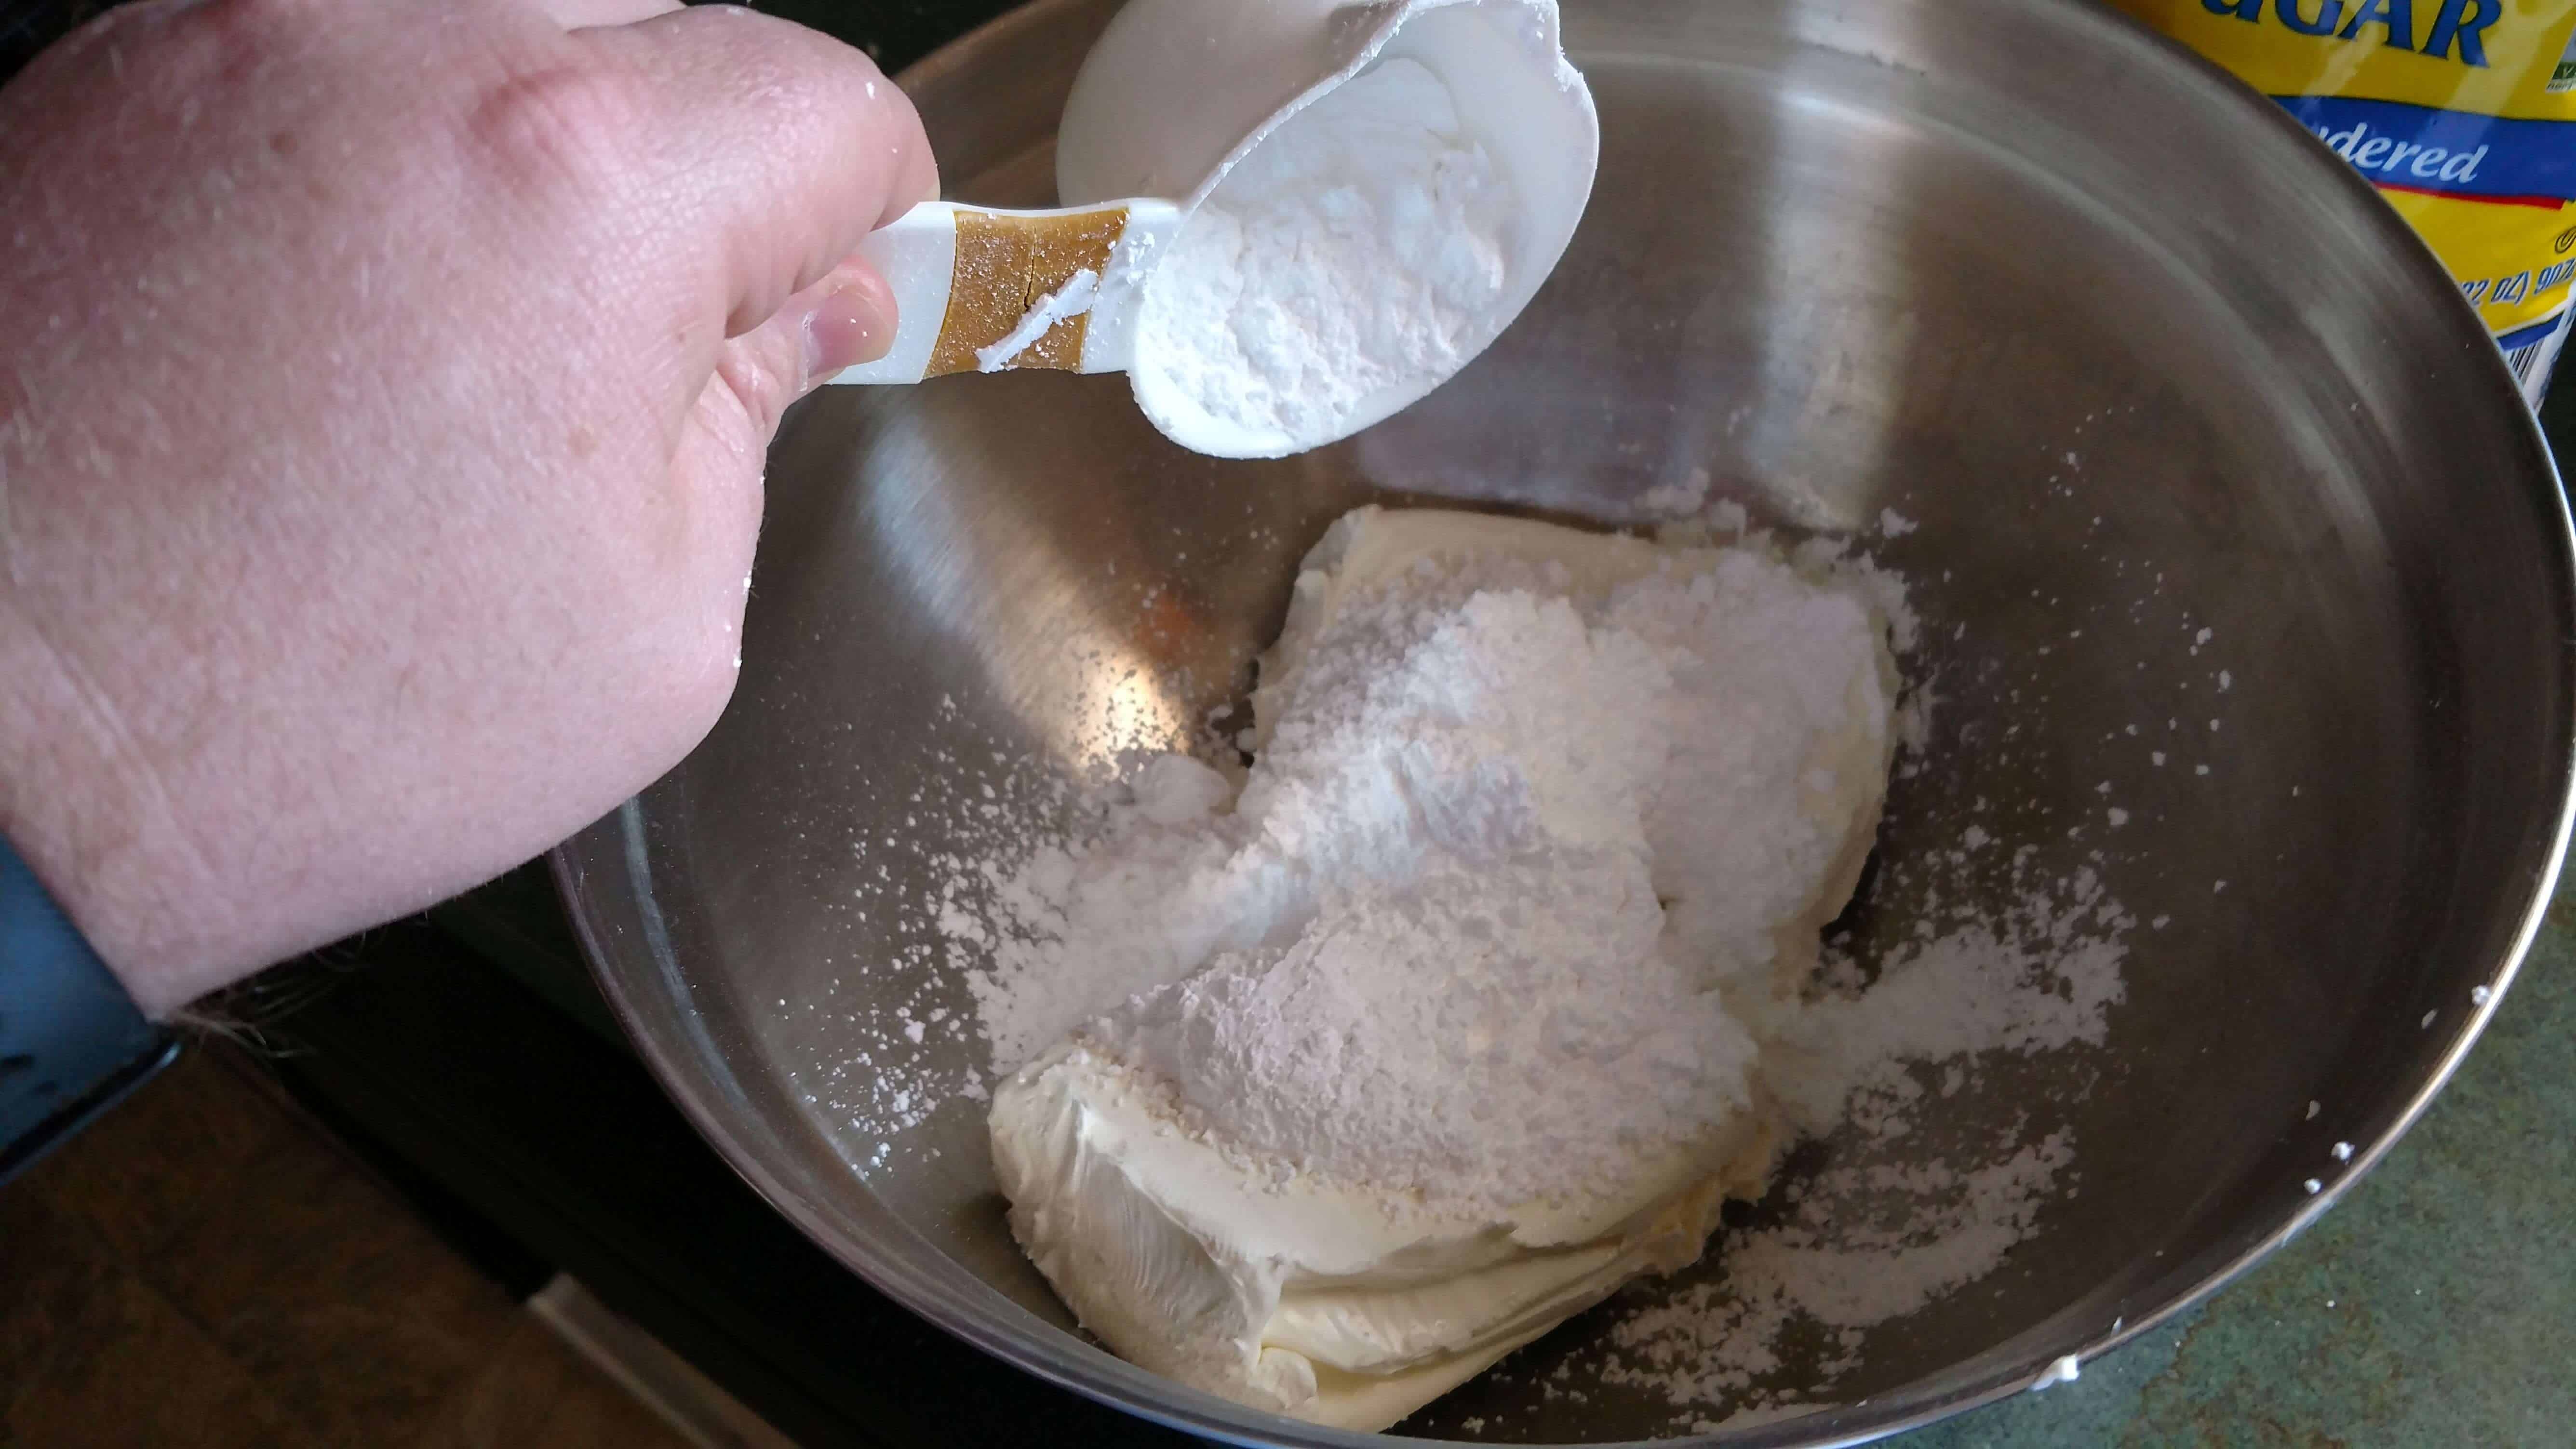 Adding powdered sugar to cream cheese